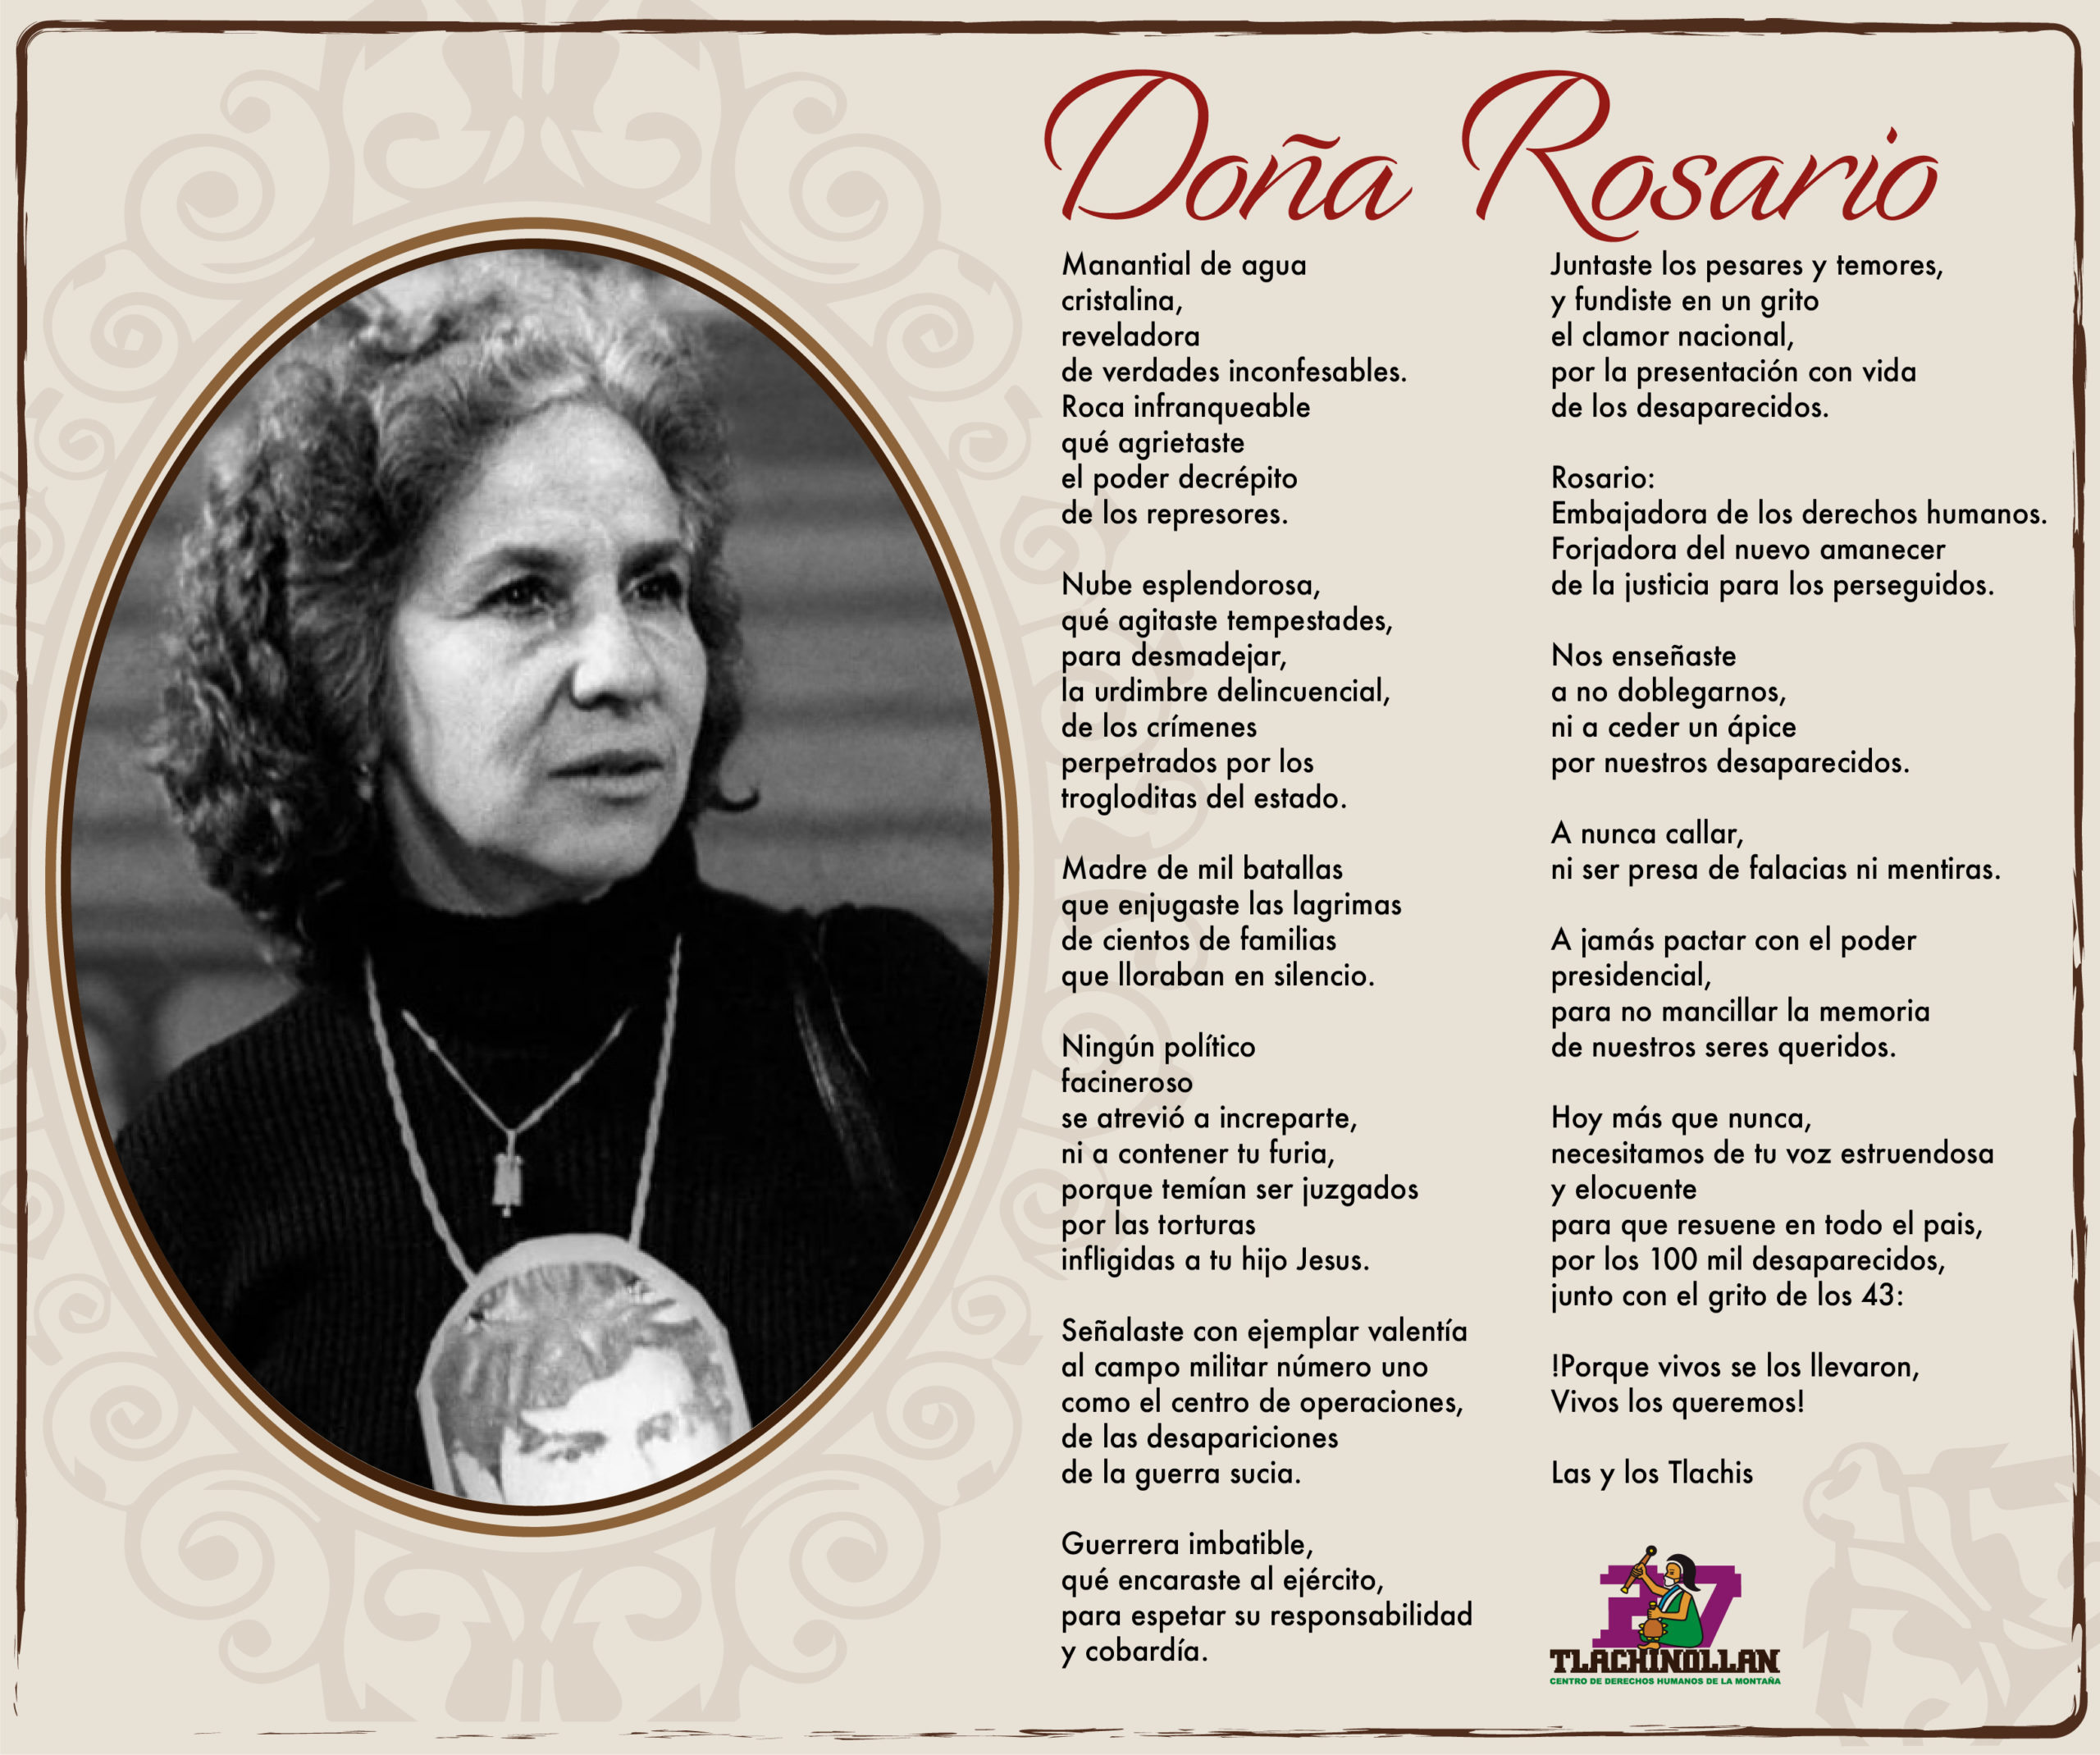 Doña Rosario, madre de mil batallas